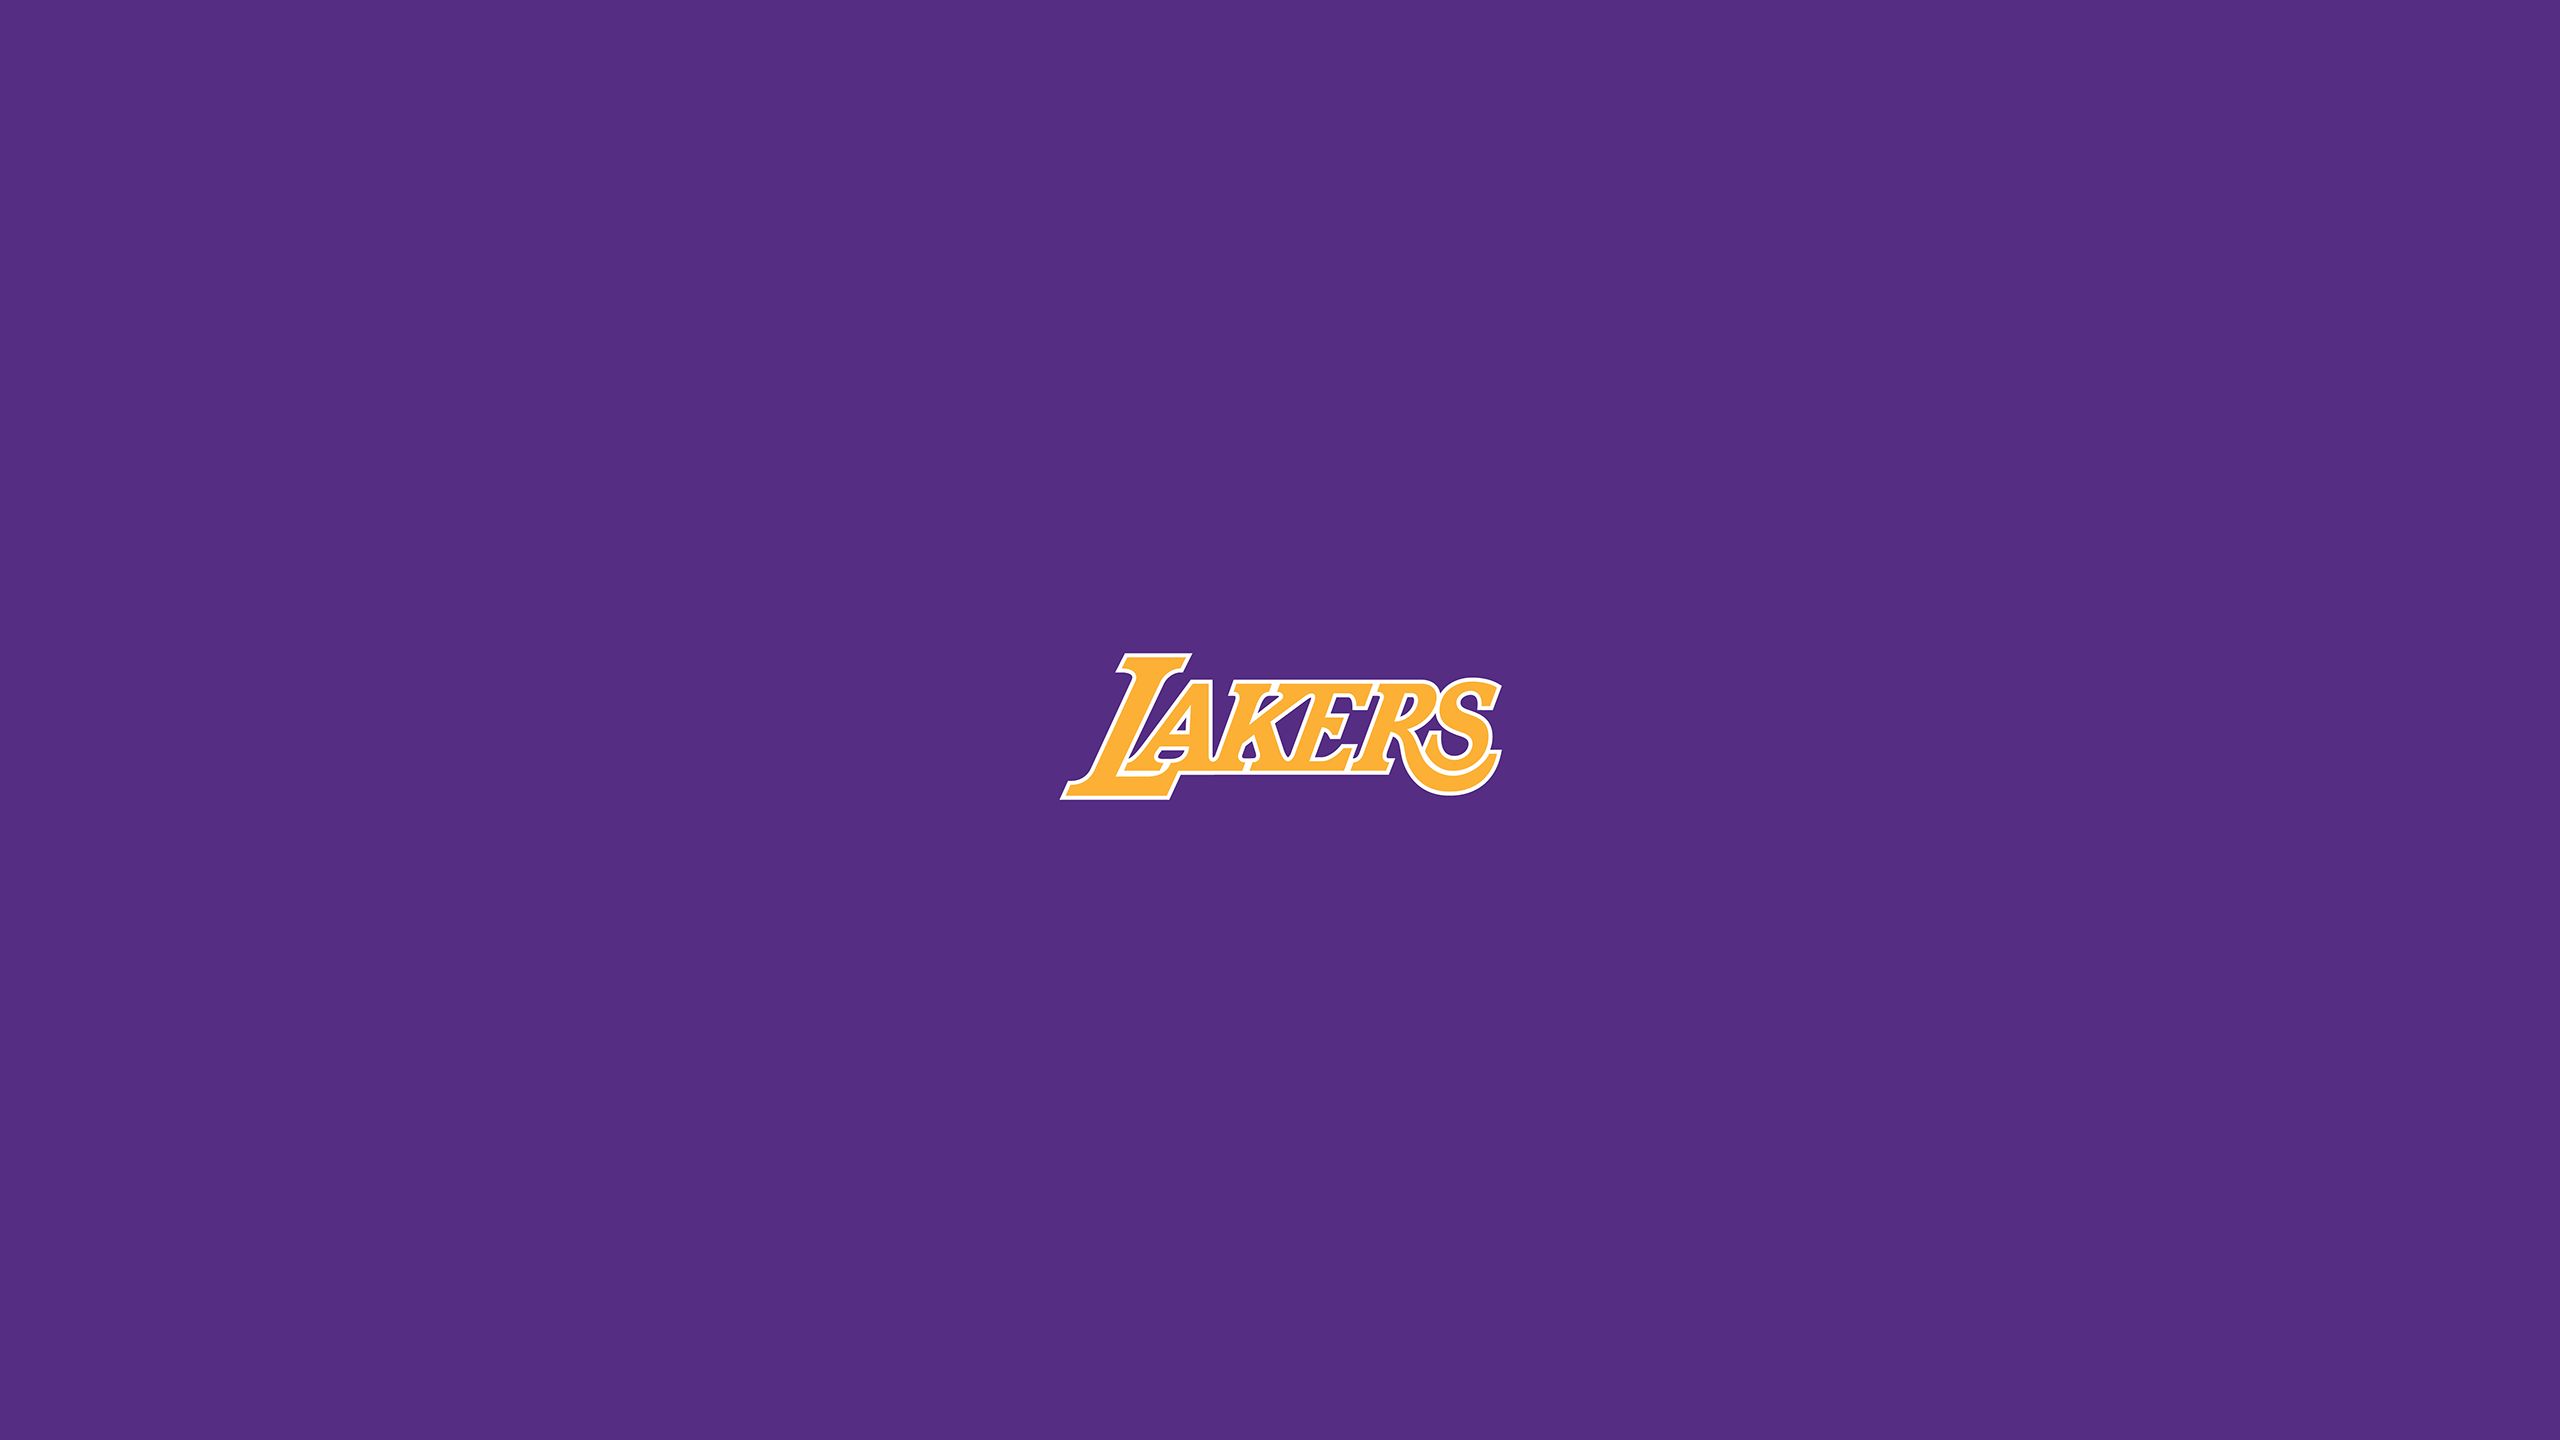 65+] Los Angeles Lakers Wallpaper - WallpaperSafari